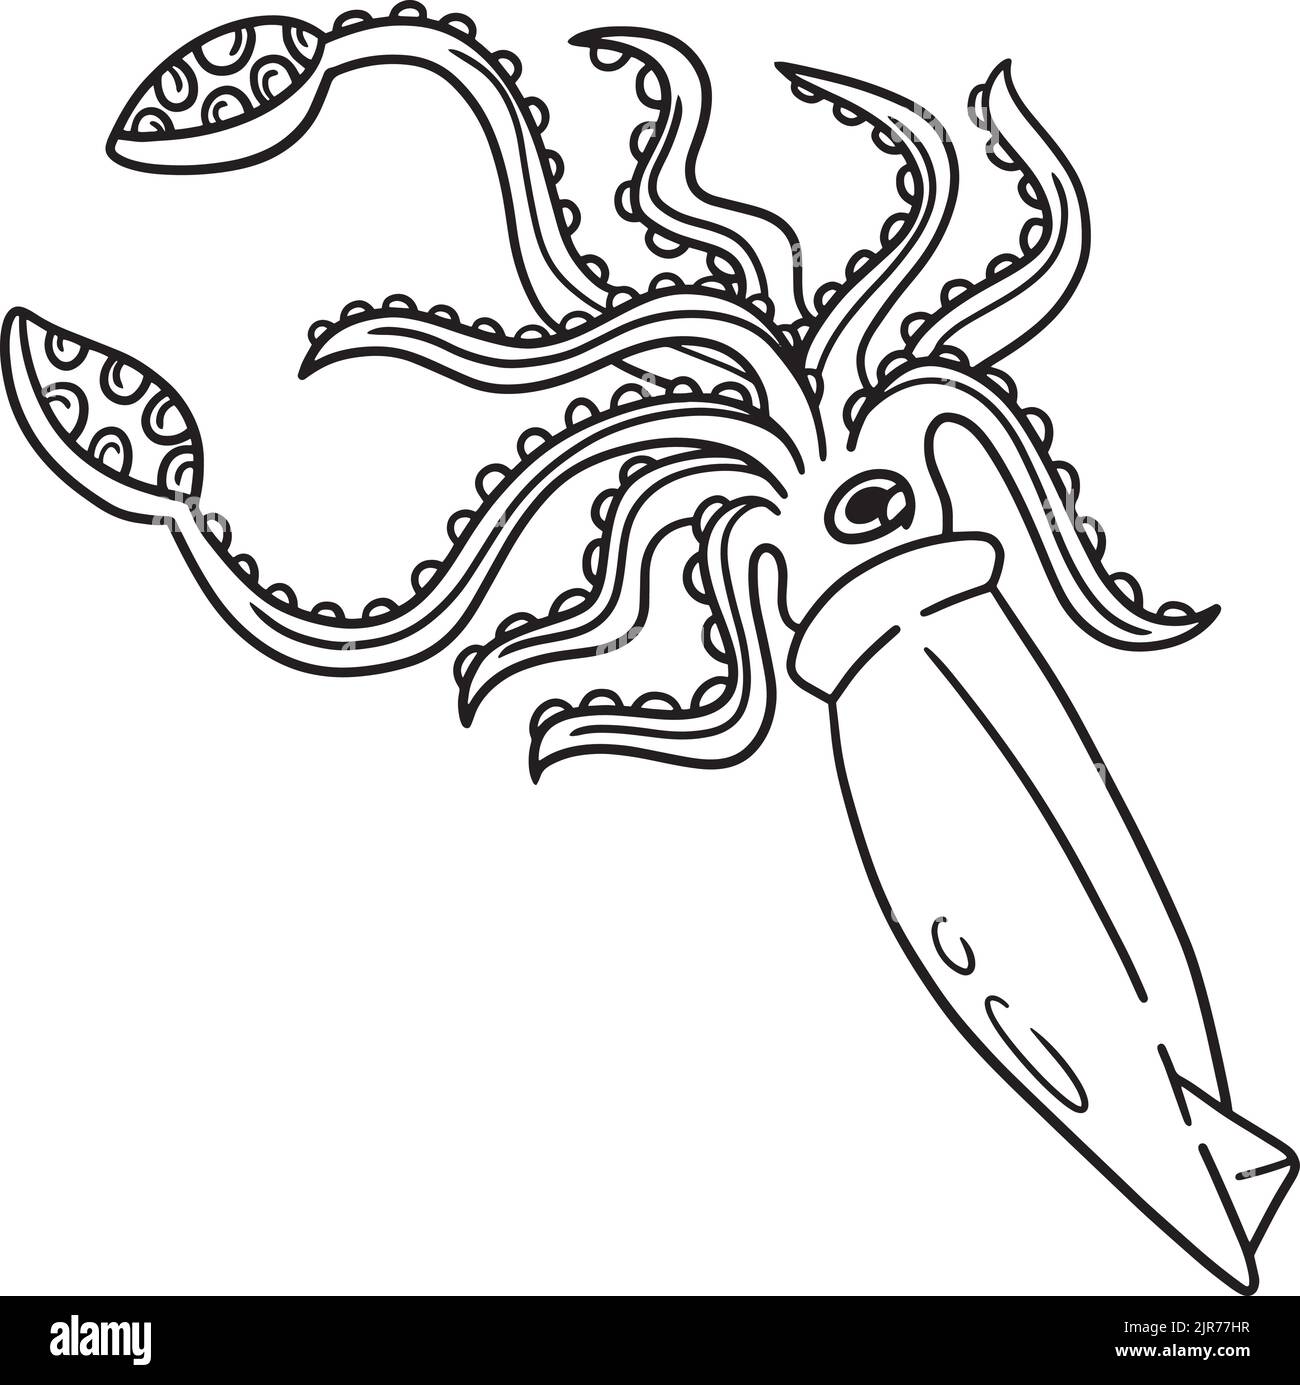 Page de coloriage de Squid géant pour enfants Illustration de Vecteur